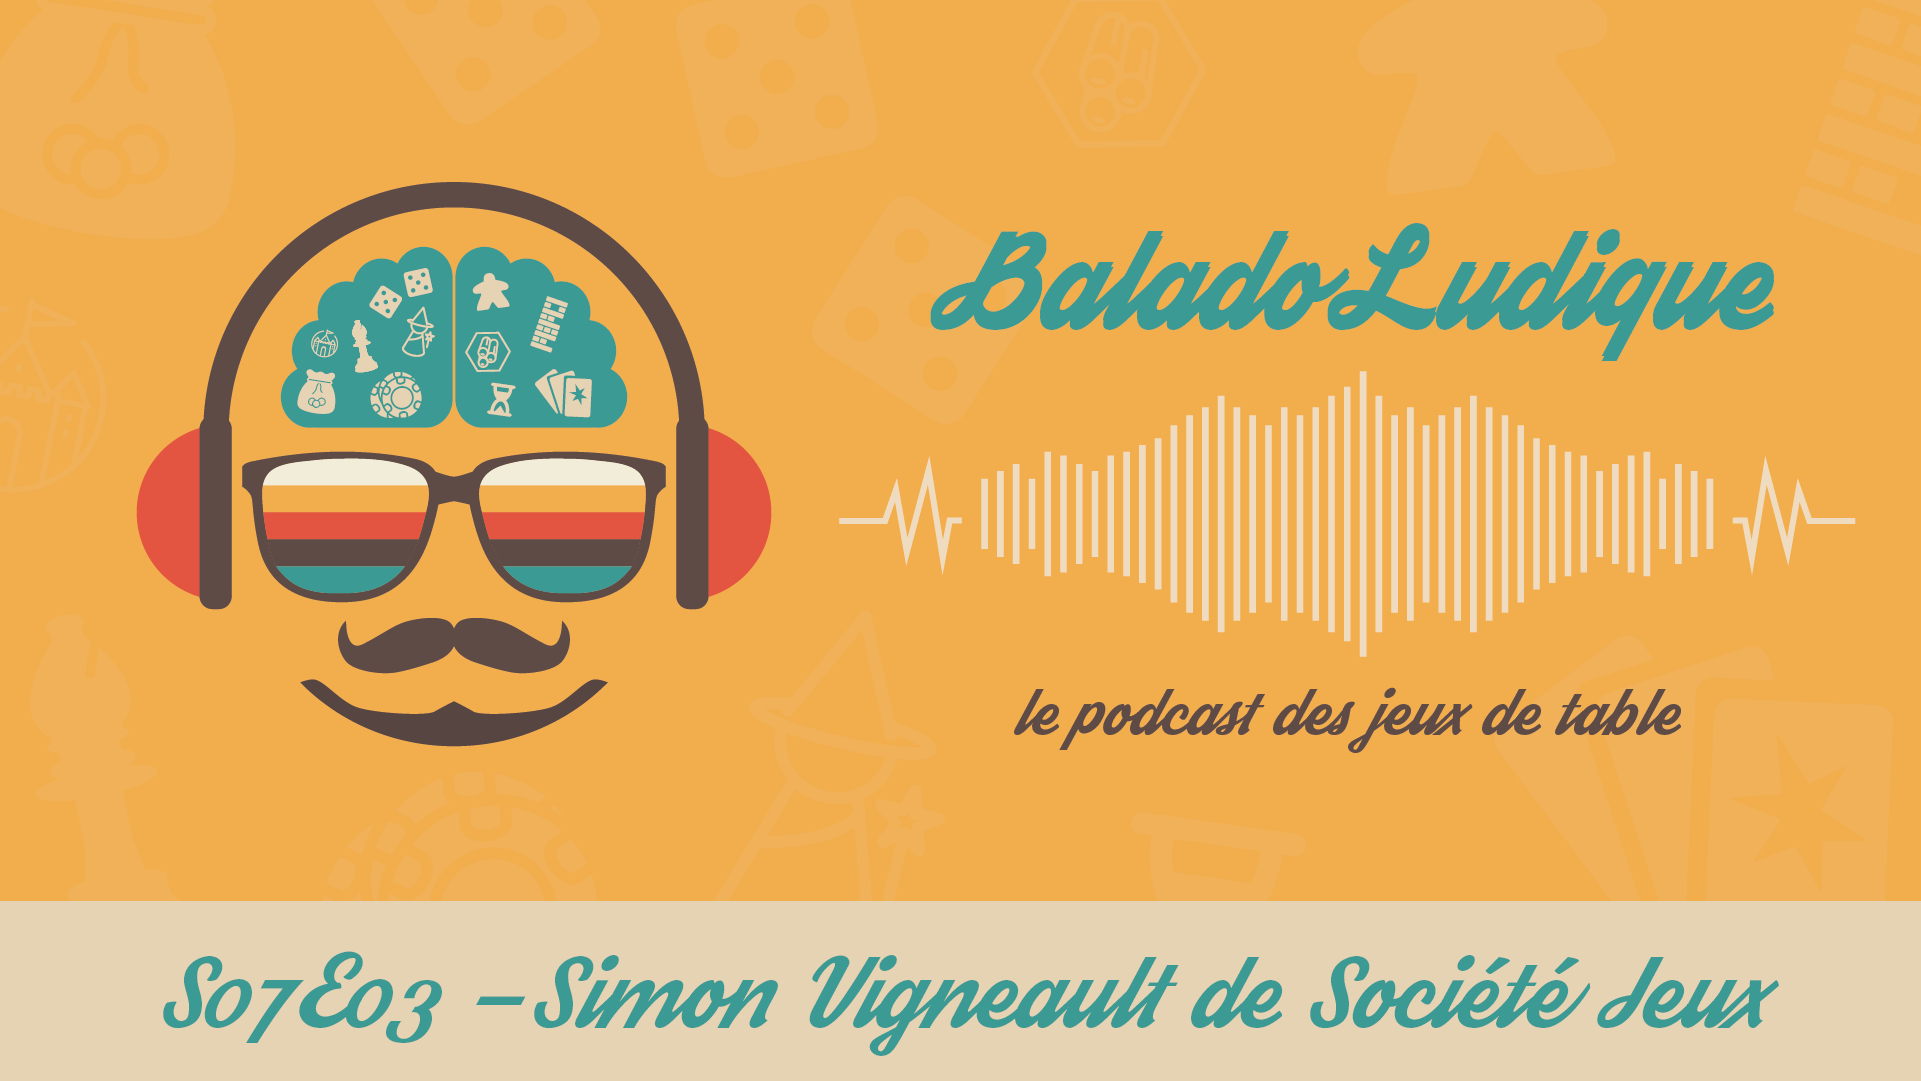 Simon Vigneault de Société Jeux - BaladoLudique - s07-e03